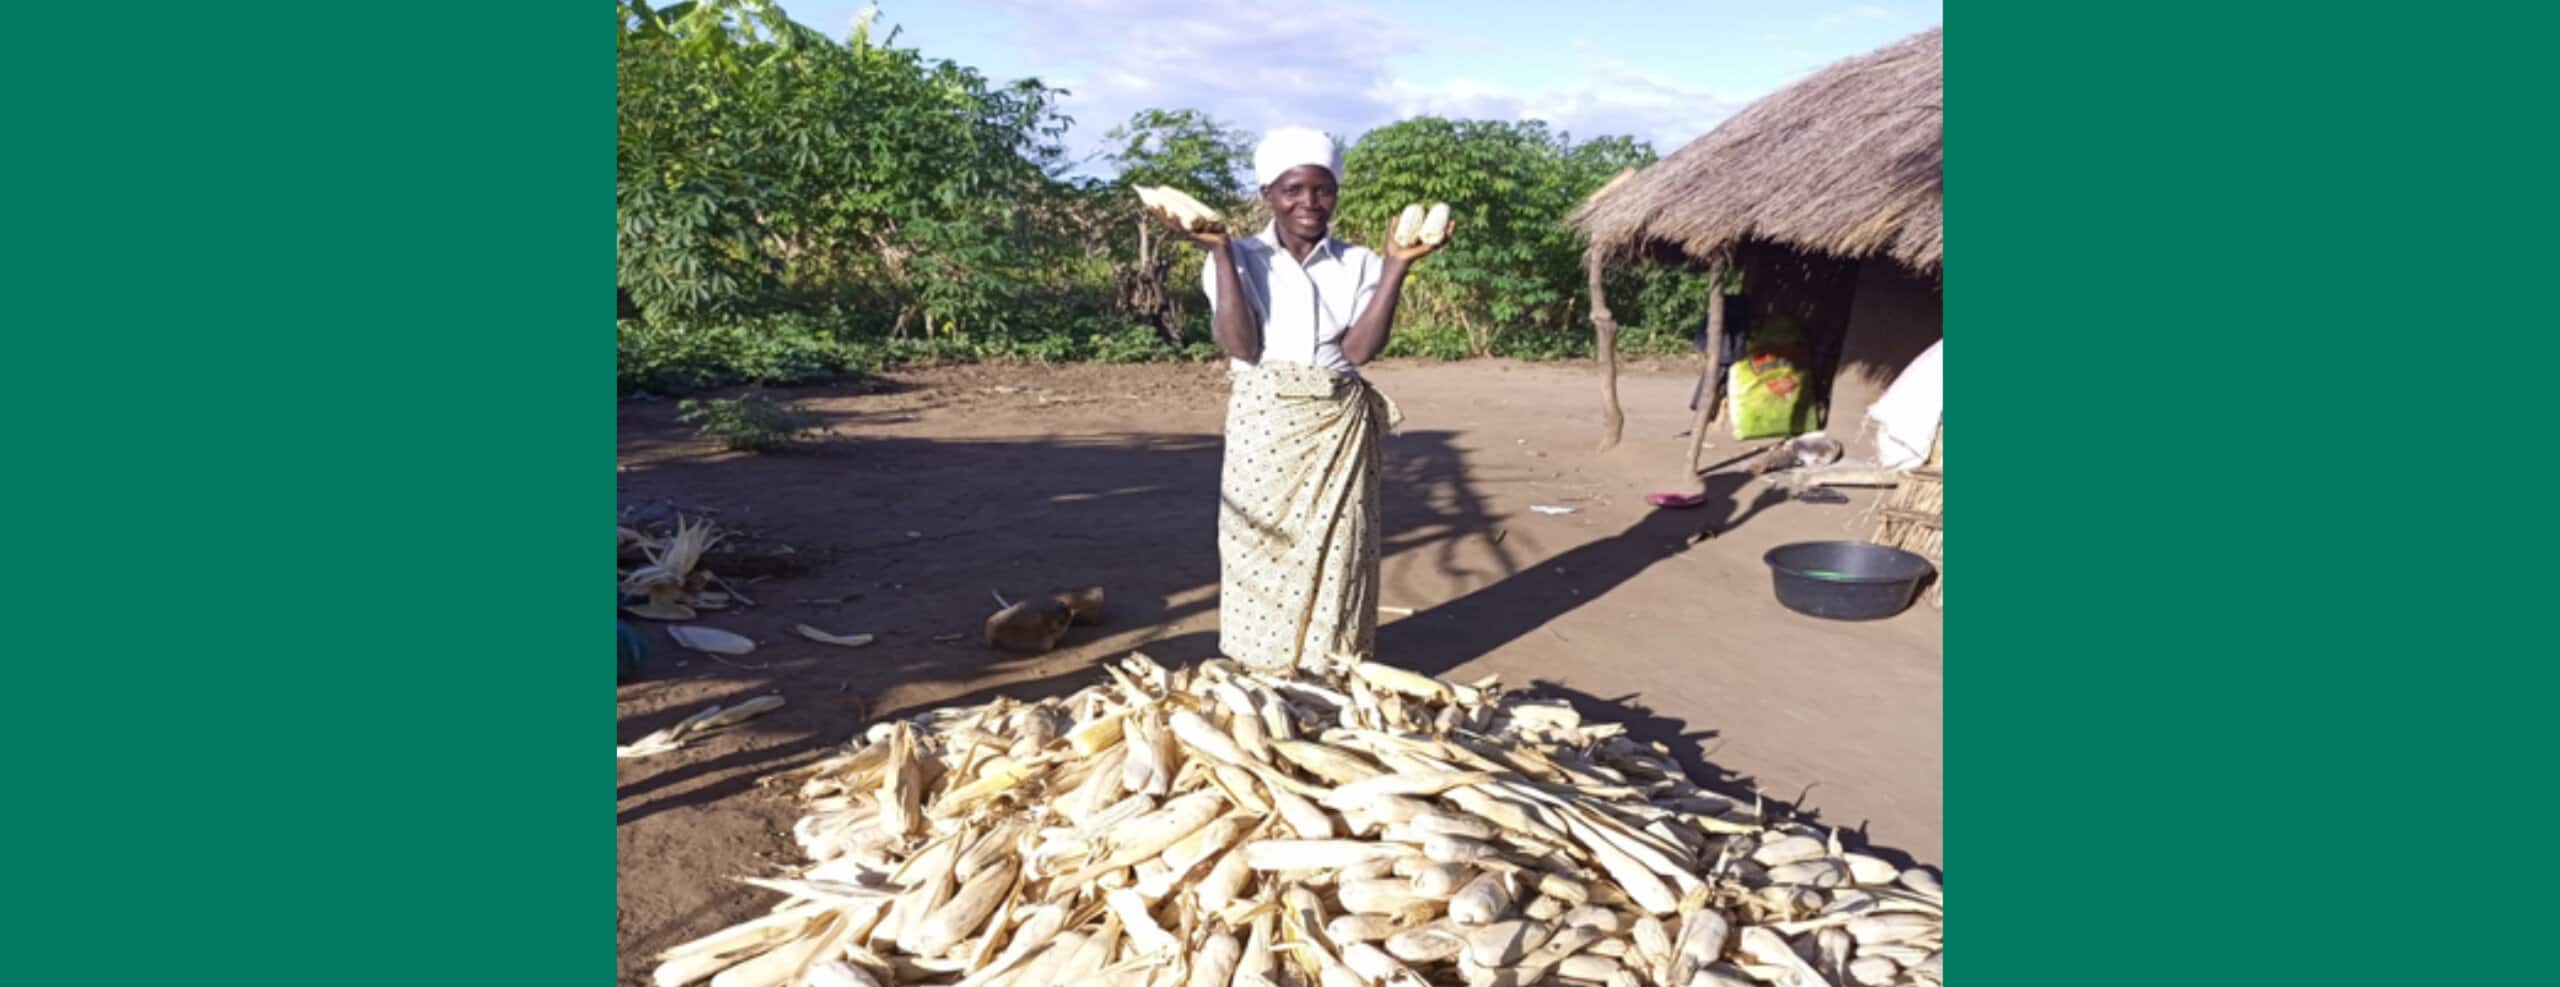 Mosambik - Belinha vor ihrer Hütte mit ihrer Maisernte